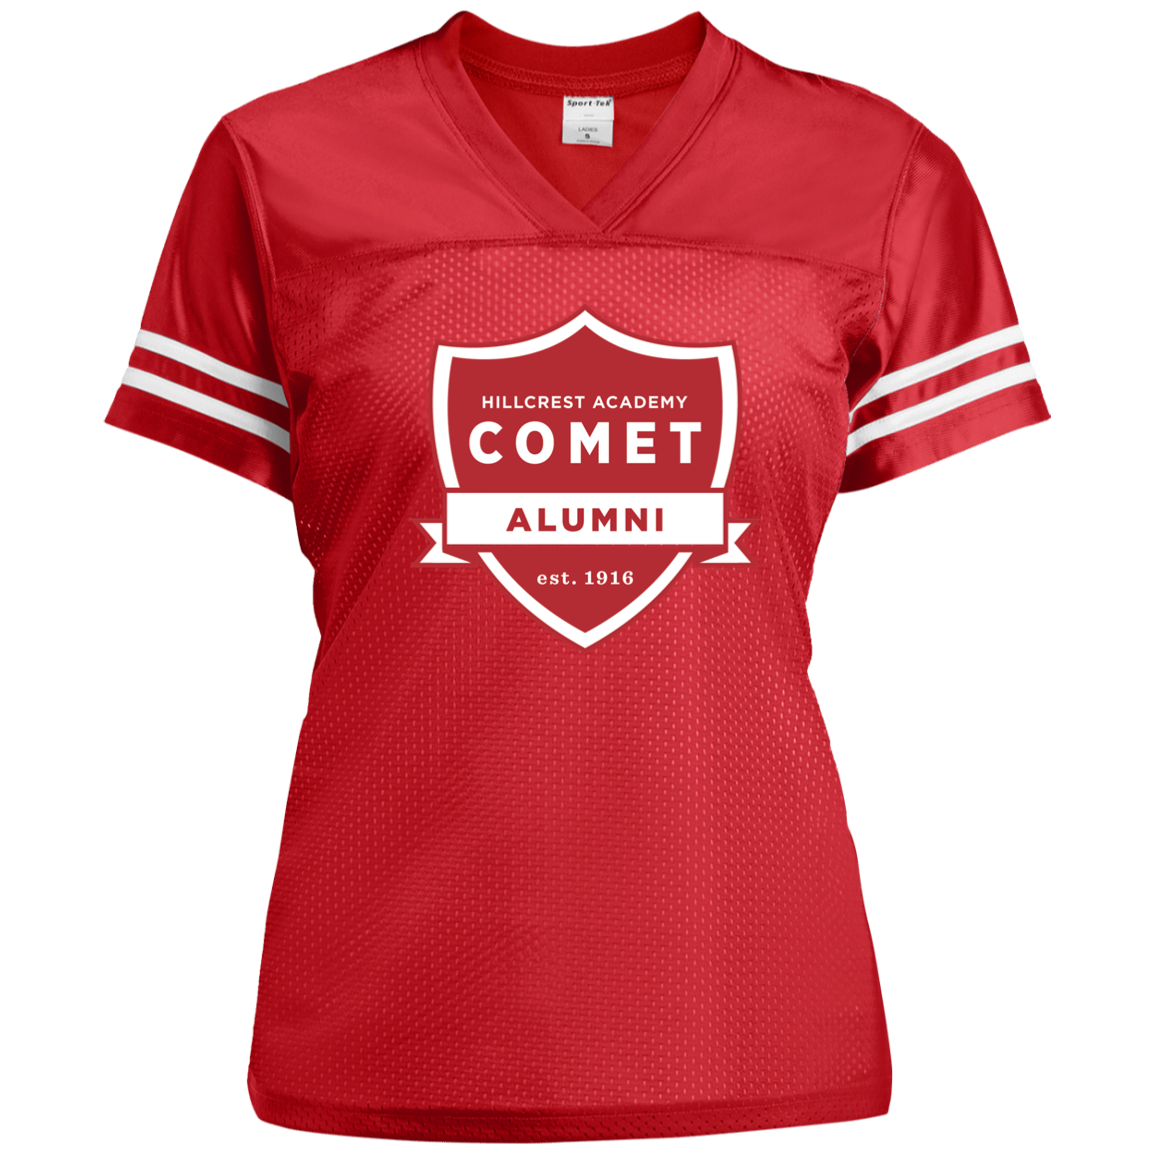 Comet Alumni - Ladies' Replica Jersey